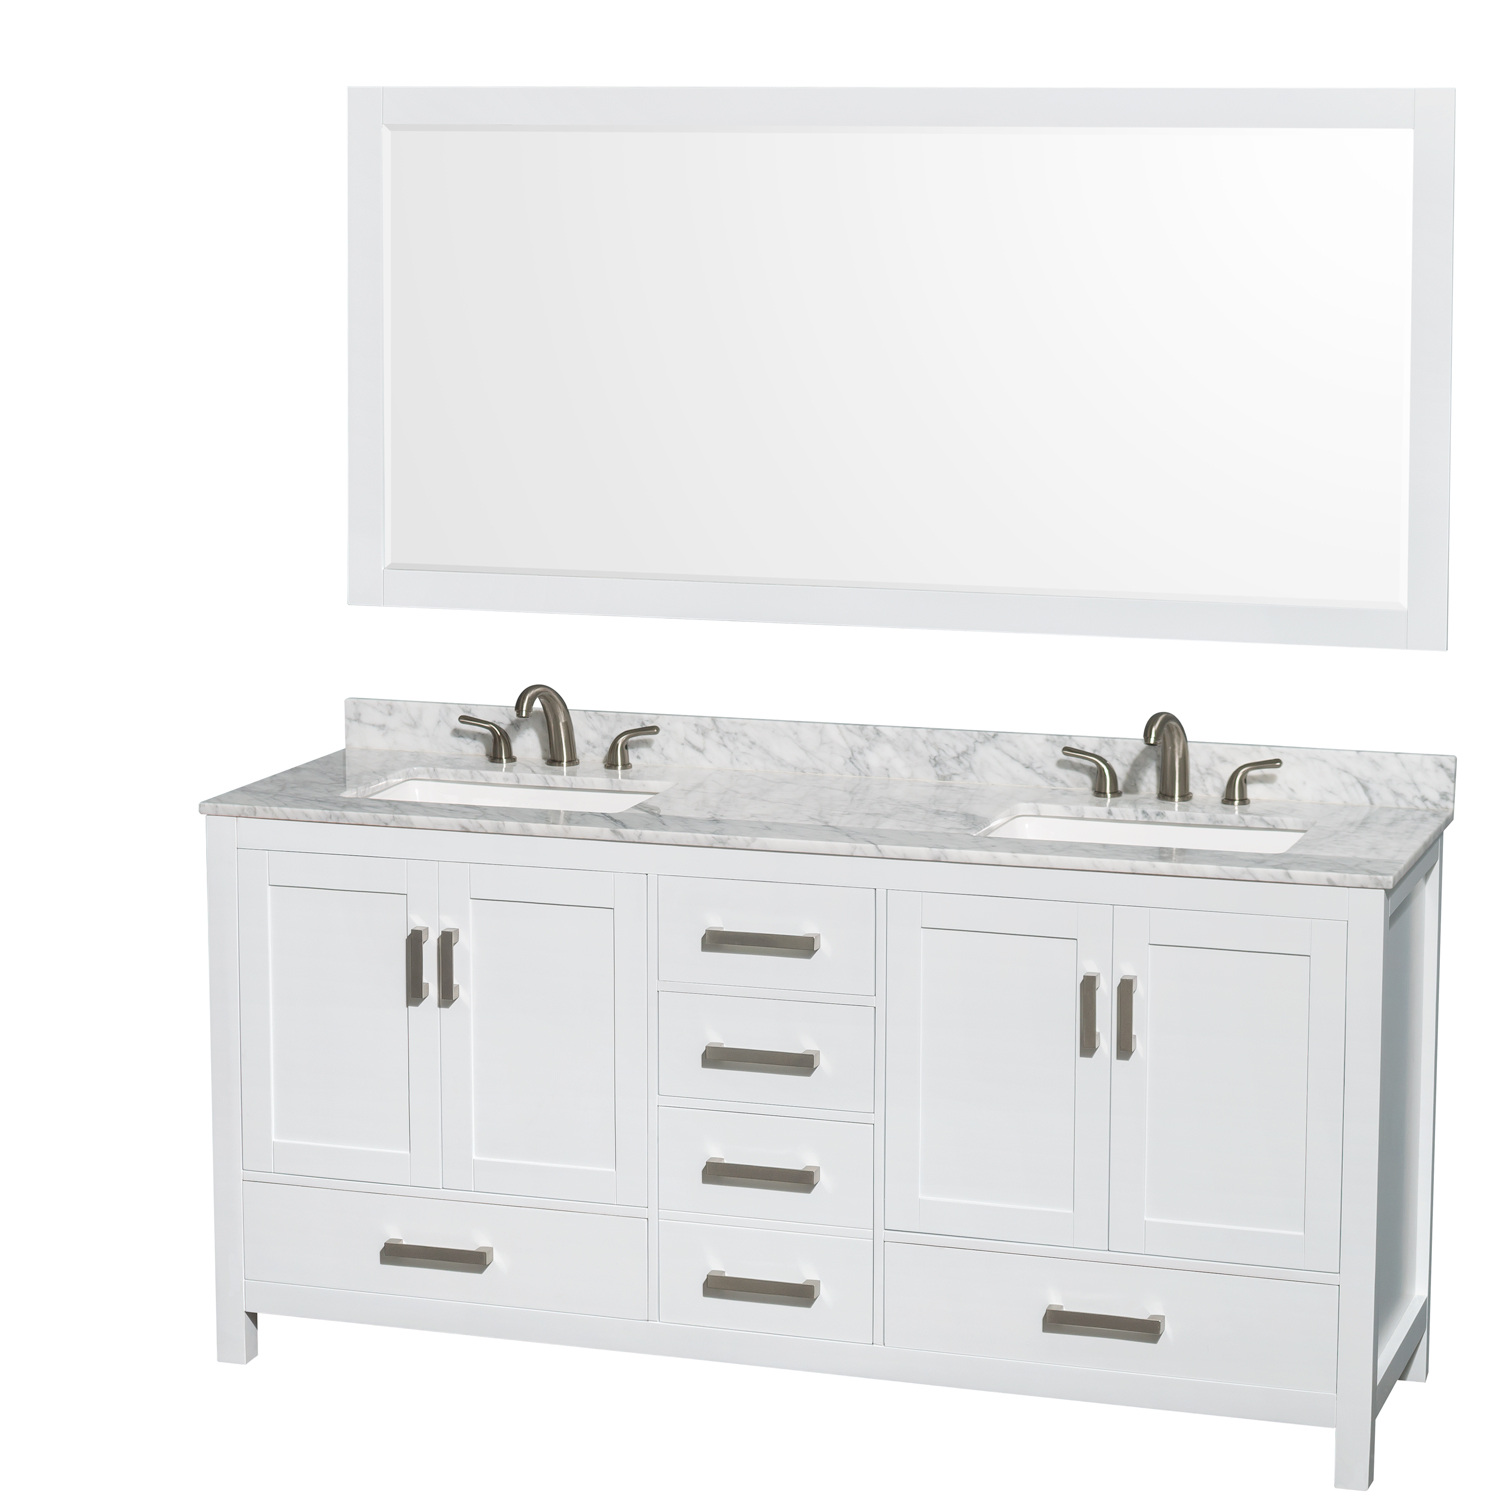 Ryla 72 Inch Double Bathroom Vanity in Dark Gray Undermount Square Sinks No Mirror Carrara Cultured Marble Countertop